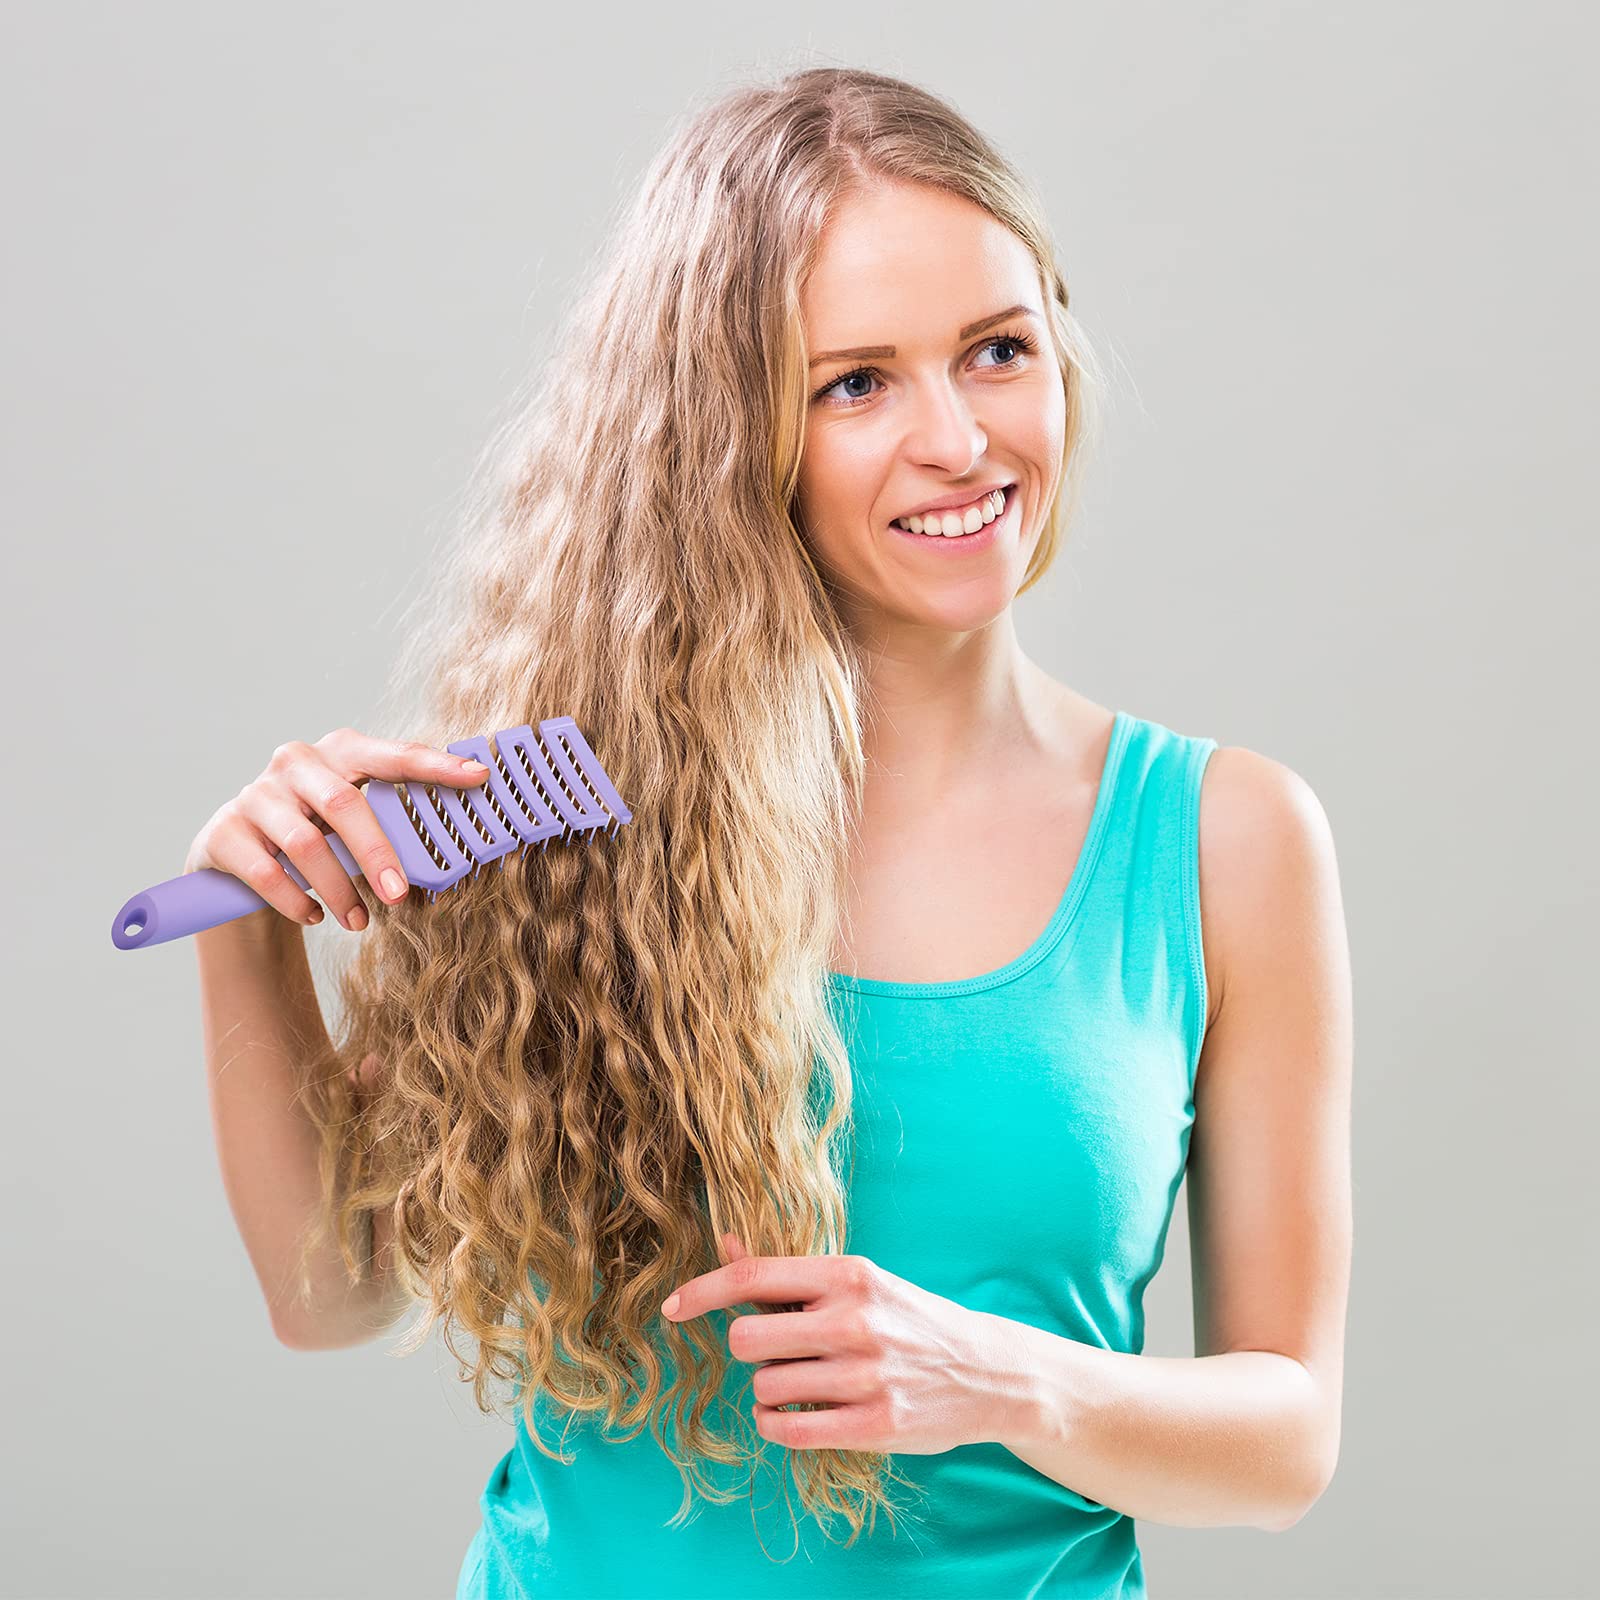 Hair Brush, Curved Vented Brush Faster Blow Drying, Professional Detangling Hair Brushes for Women Men Kids , Paddle Detangler Brush for Wet Dry Curly Thick Straight Hair